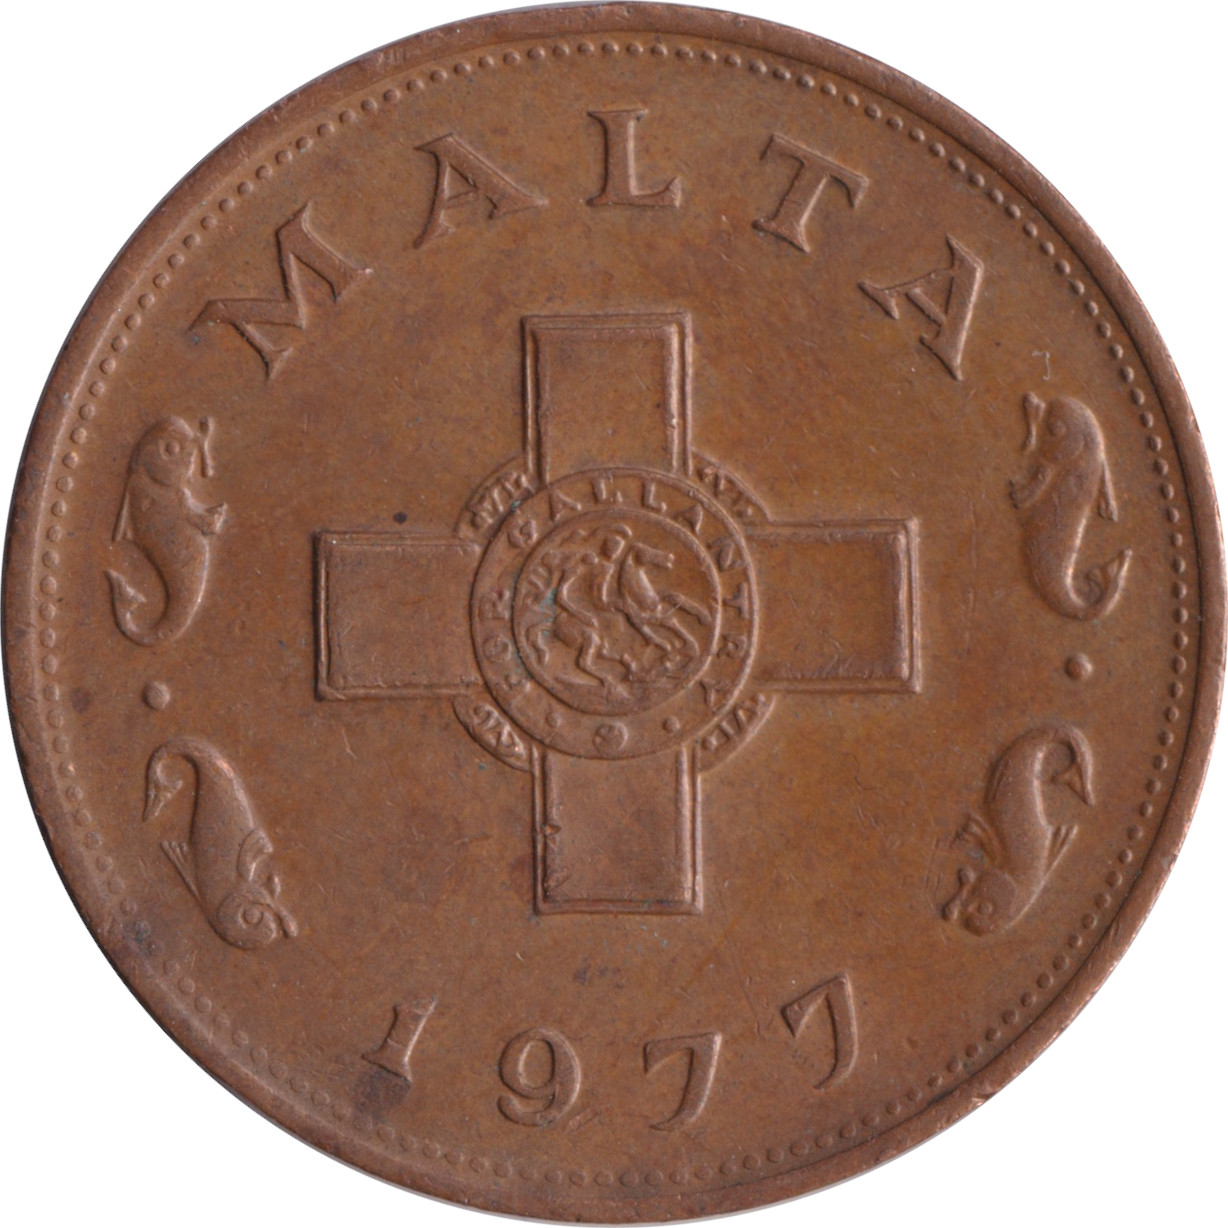 1 cent - Croix de Georges - Branches